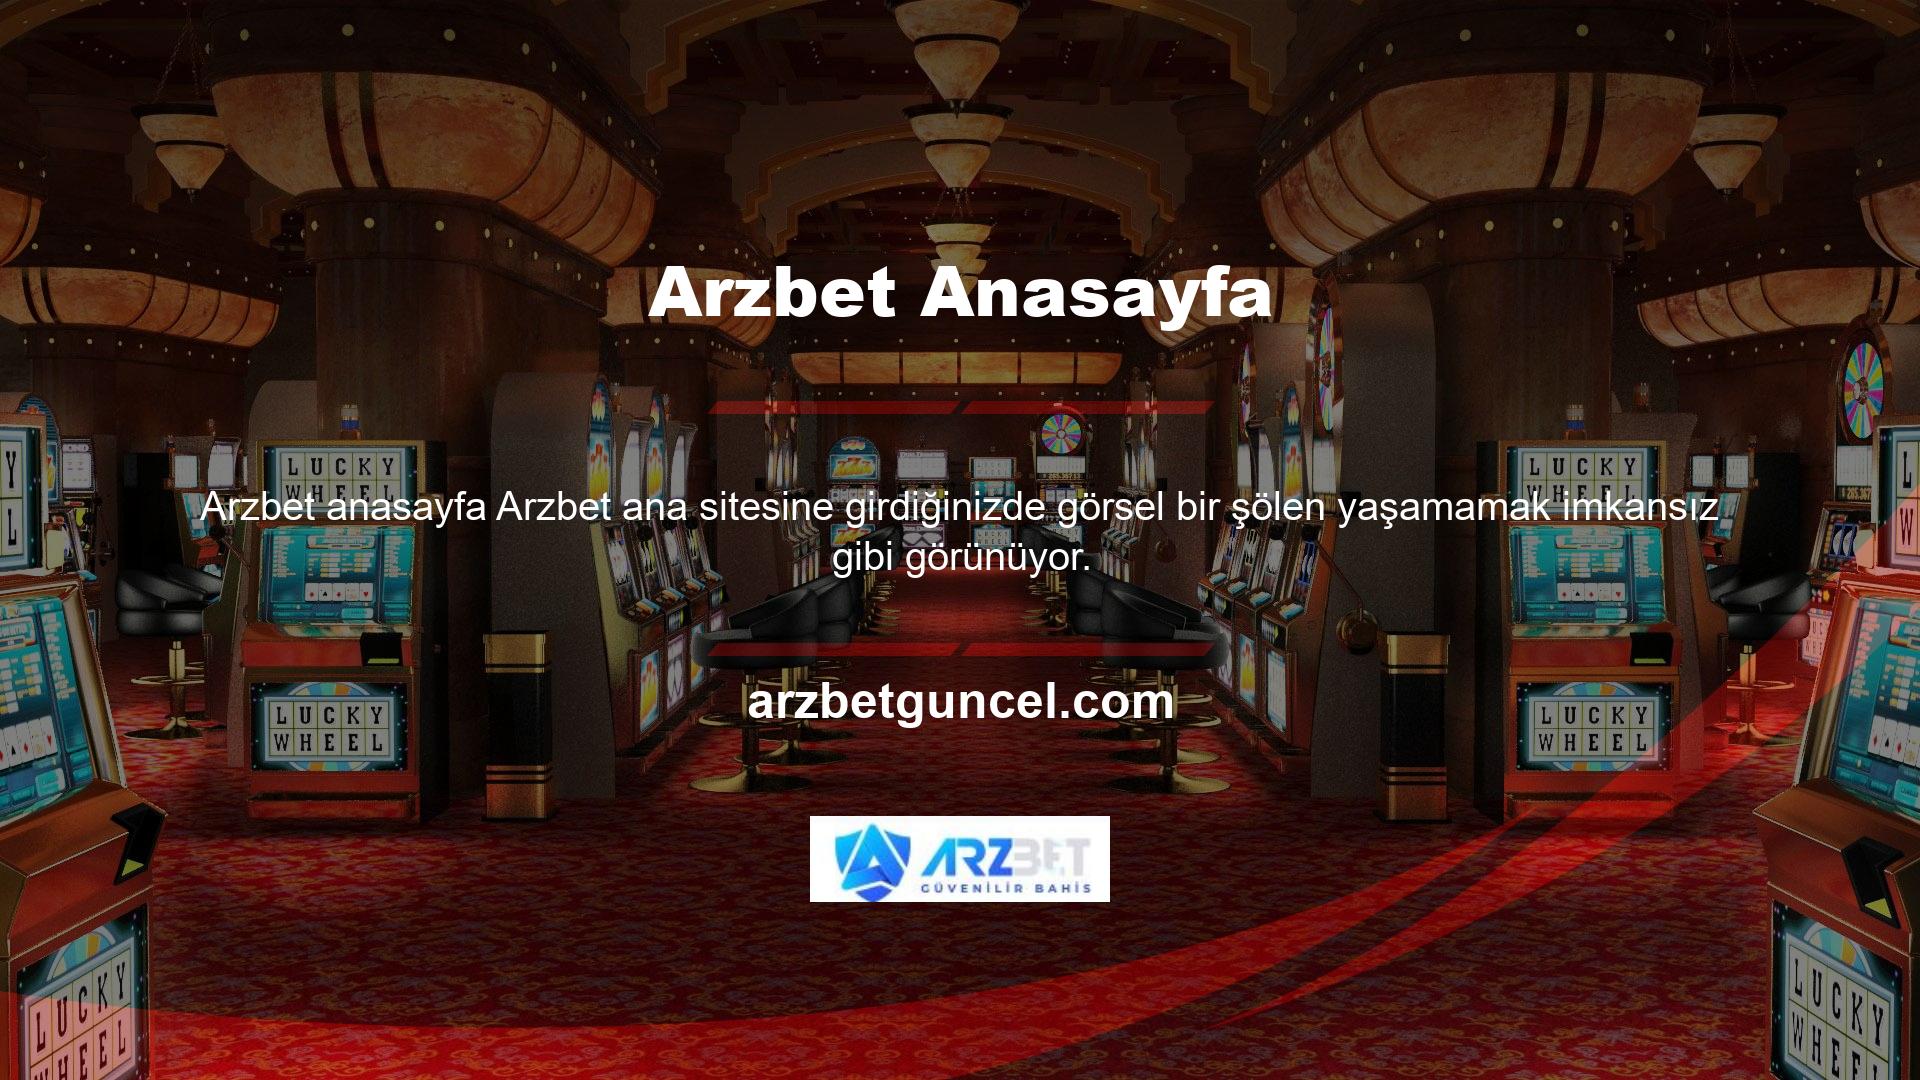 Sayın Arzbet ana sayfasında yayınlanan fotoğraf onun canlı bahis ve casino sektöründeki aktif faaliyetlerini gölgelese de biz Türkler spor bahislerinden ve canlı bahislerden uzak kalamayız